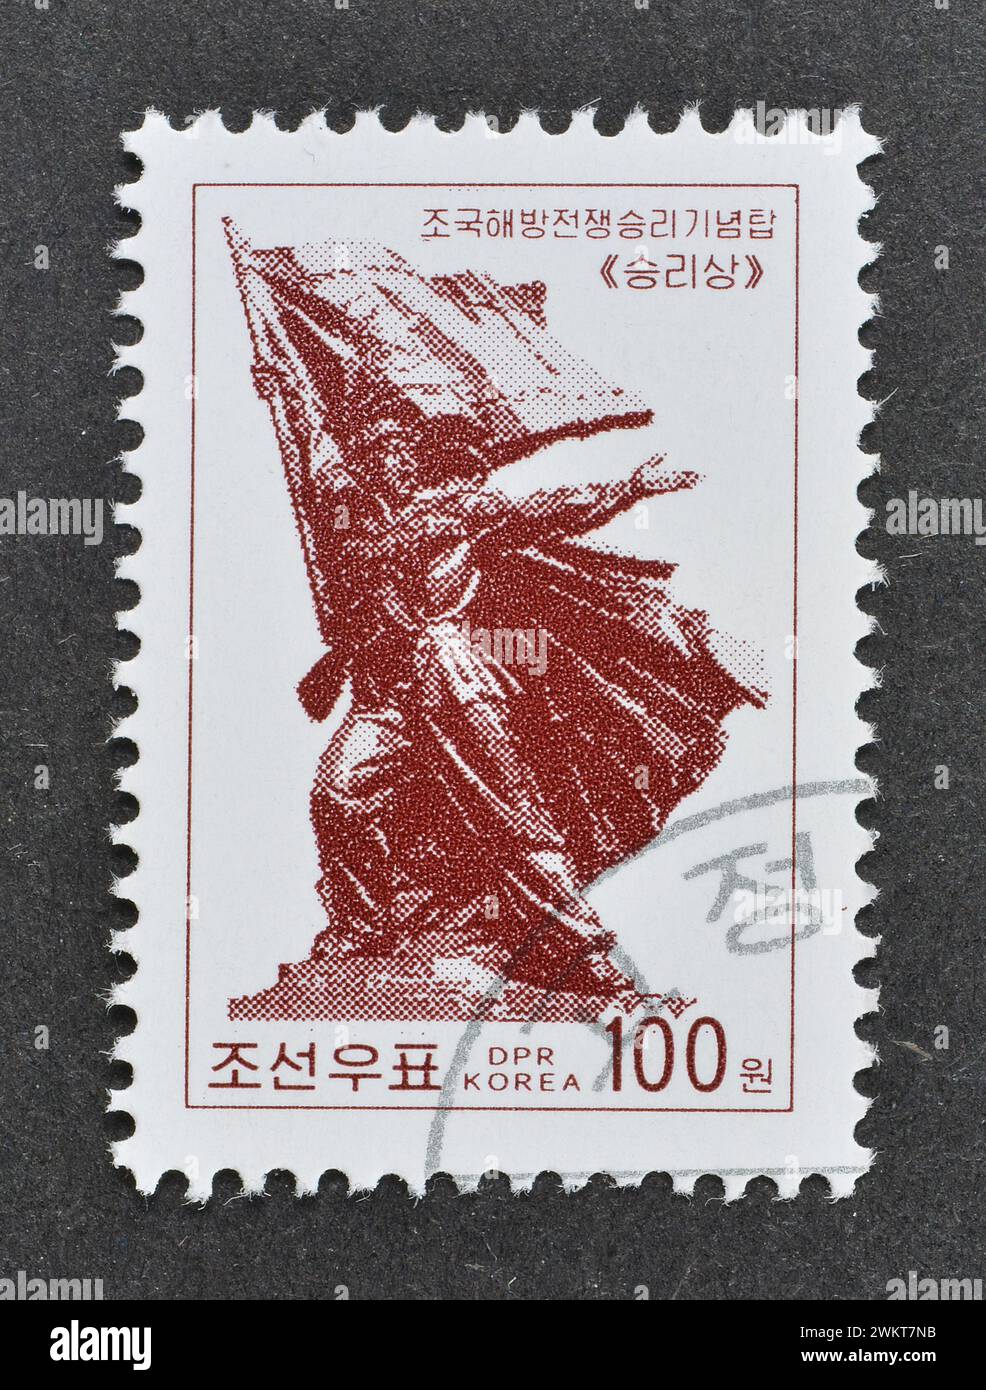 Timbre-poste oblitéré imprimé par la Corée du Nord, qui montre le monument de la victoire, vers 2002. Banque D'Images